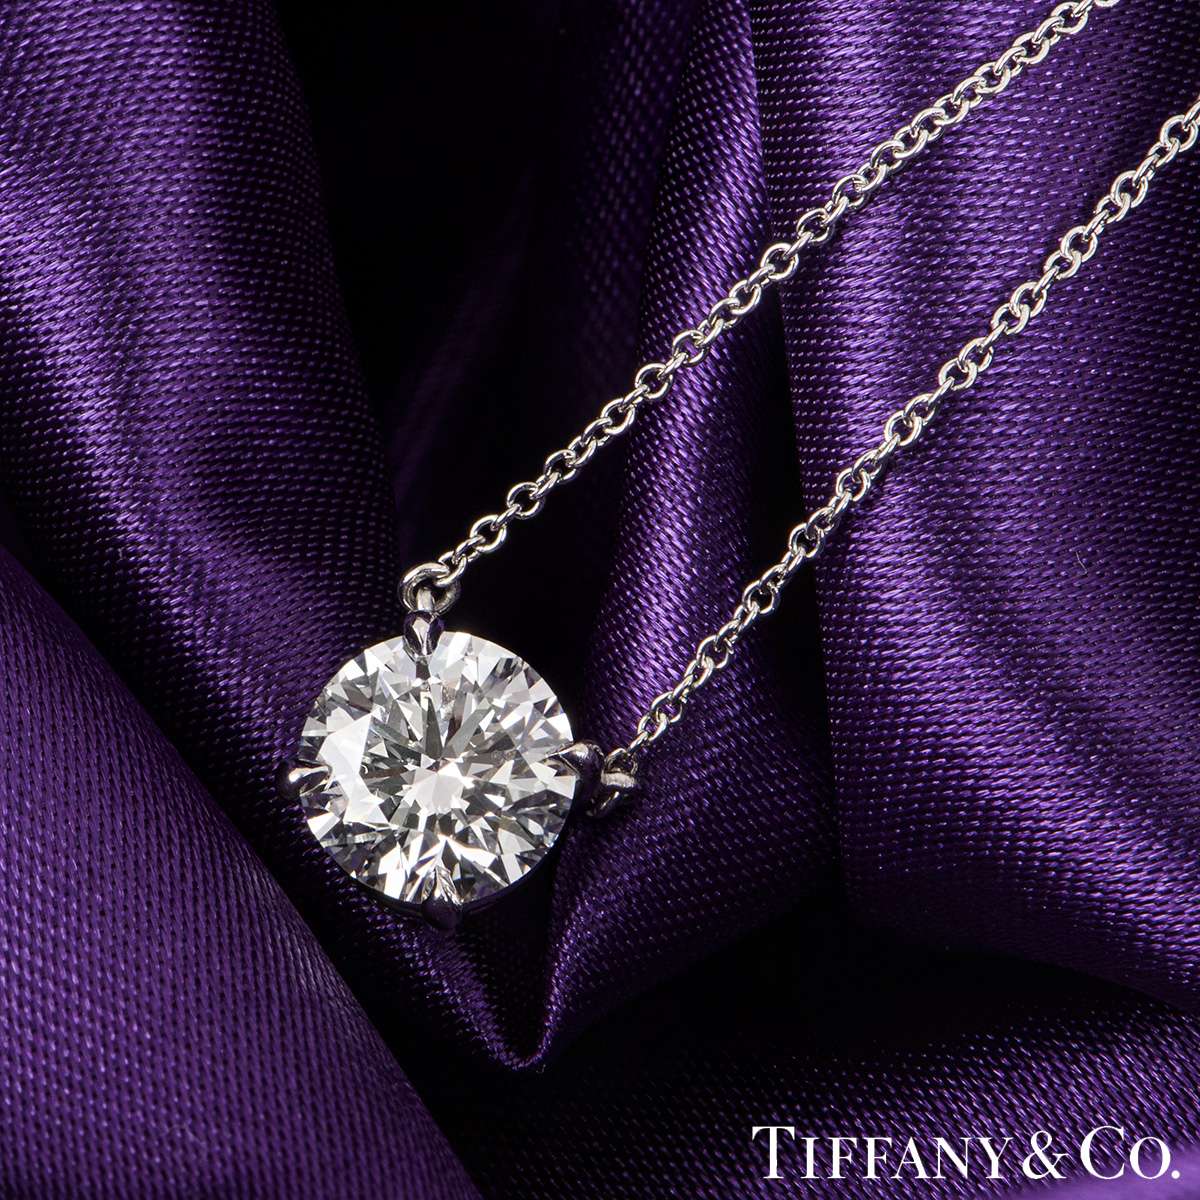 Tiffany & Co. Platinum Diamond Solitaire Pendant 2.01ct F/VS1